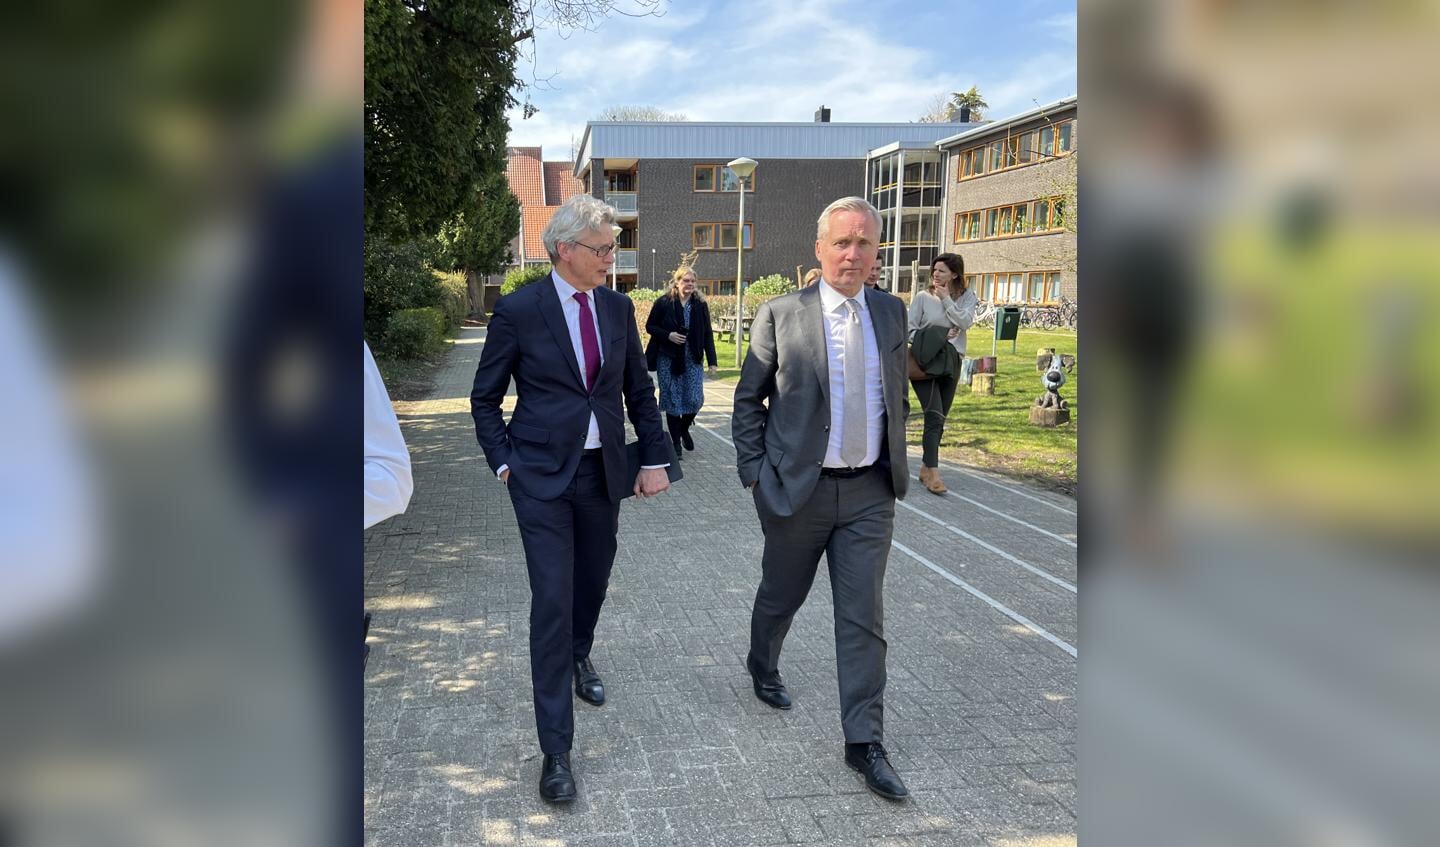 Staatssecretaris Eric van der Burg (asiel) bracht woensdag een bezoek aan het AZC aan de Barchman Wuytierslaan in Amersfoort.